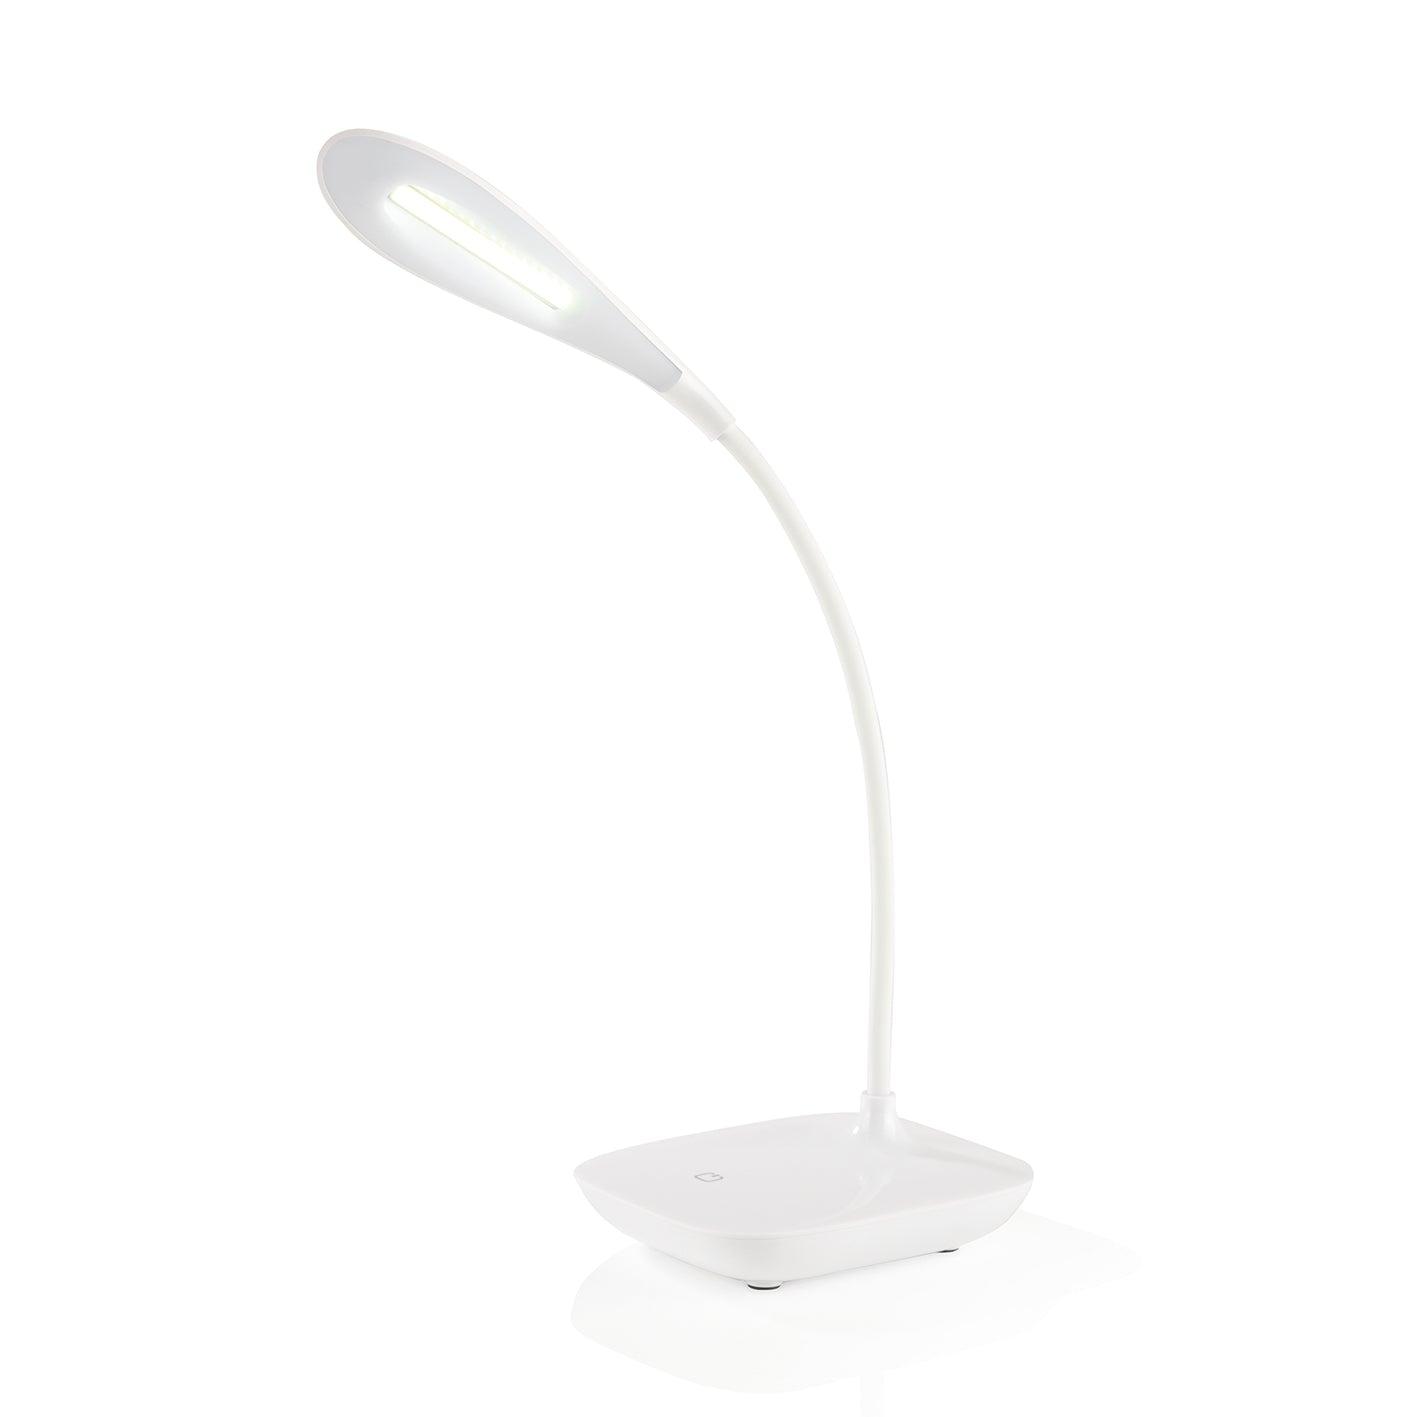 LED-Tischleuchte "Daylight" - 360° flexibler Lampenhals - weiß